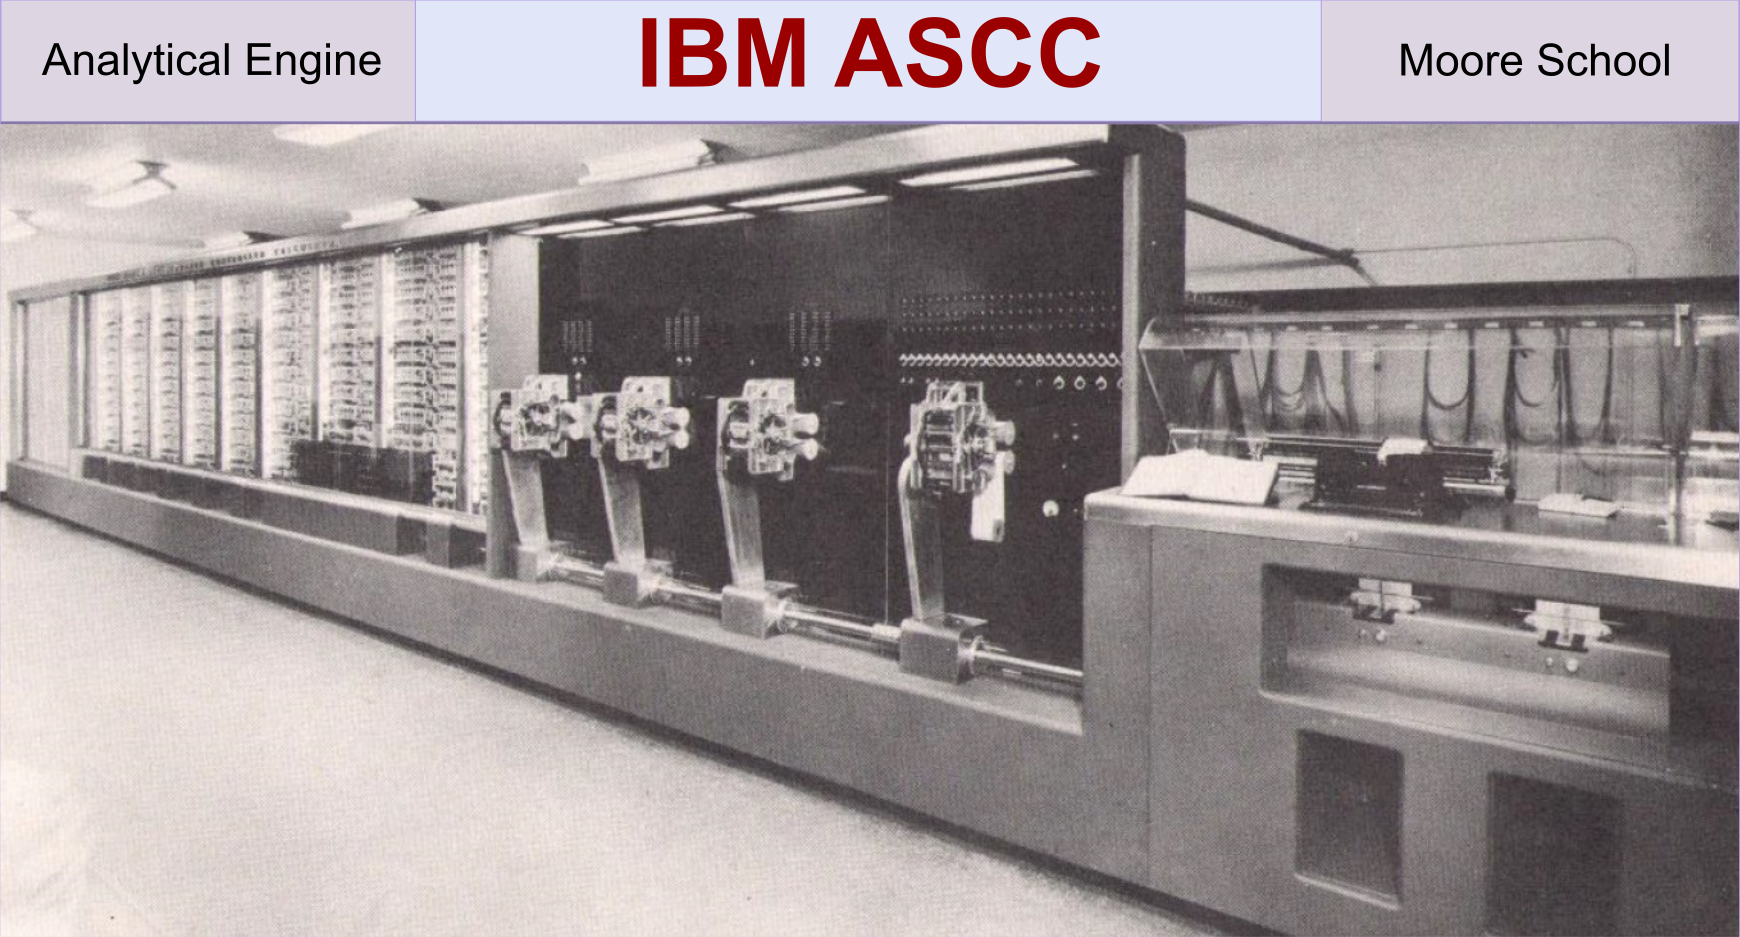 IBM ASCC Architecture